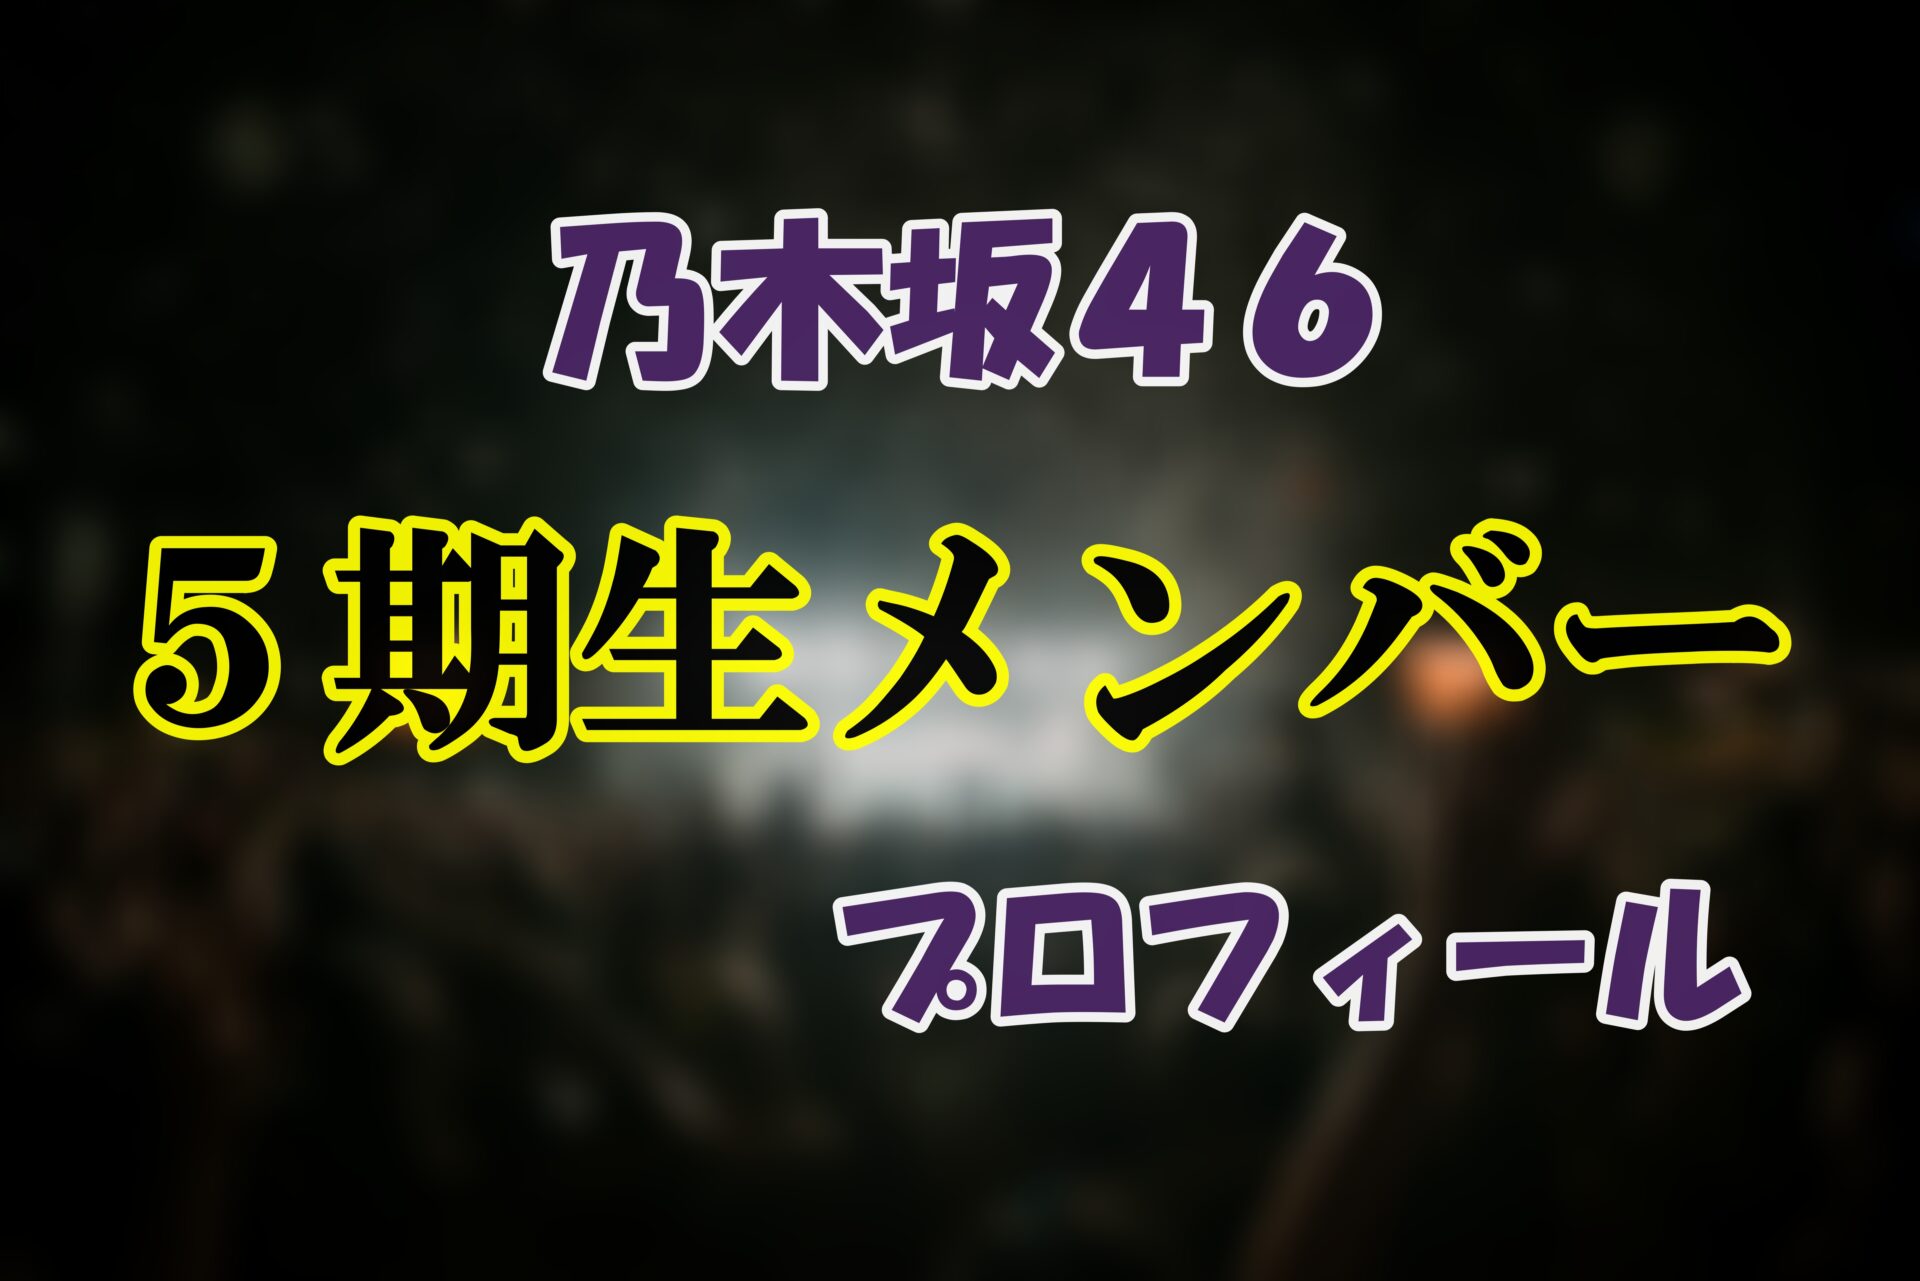 乃木坂46 5期生メンバープロフィール 最新情報 サムネイル